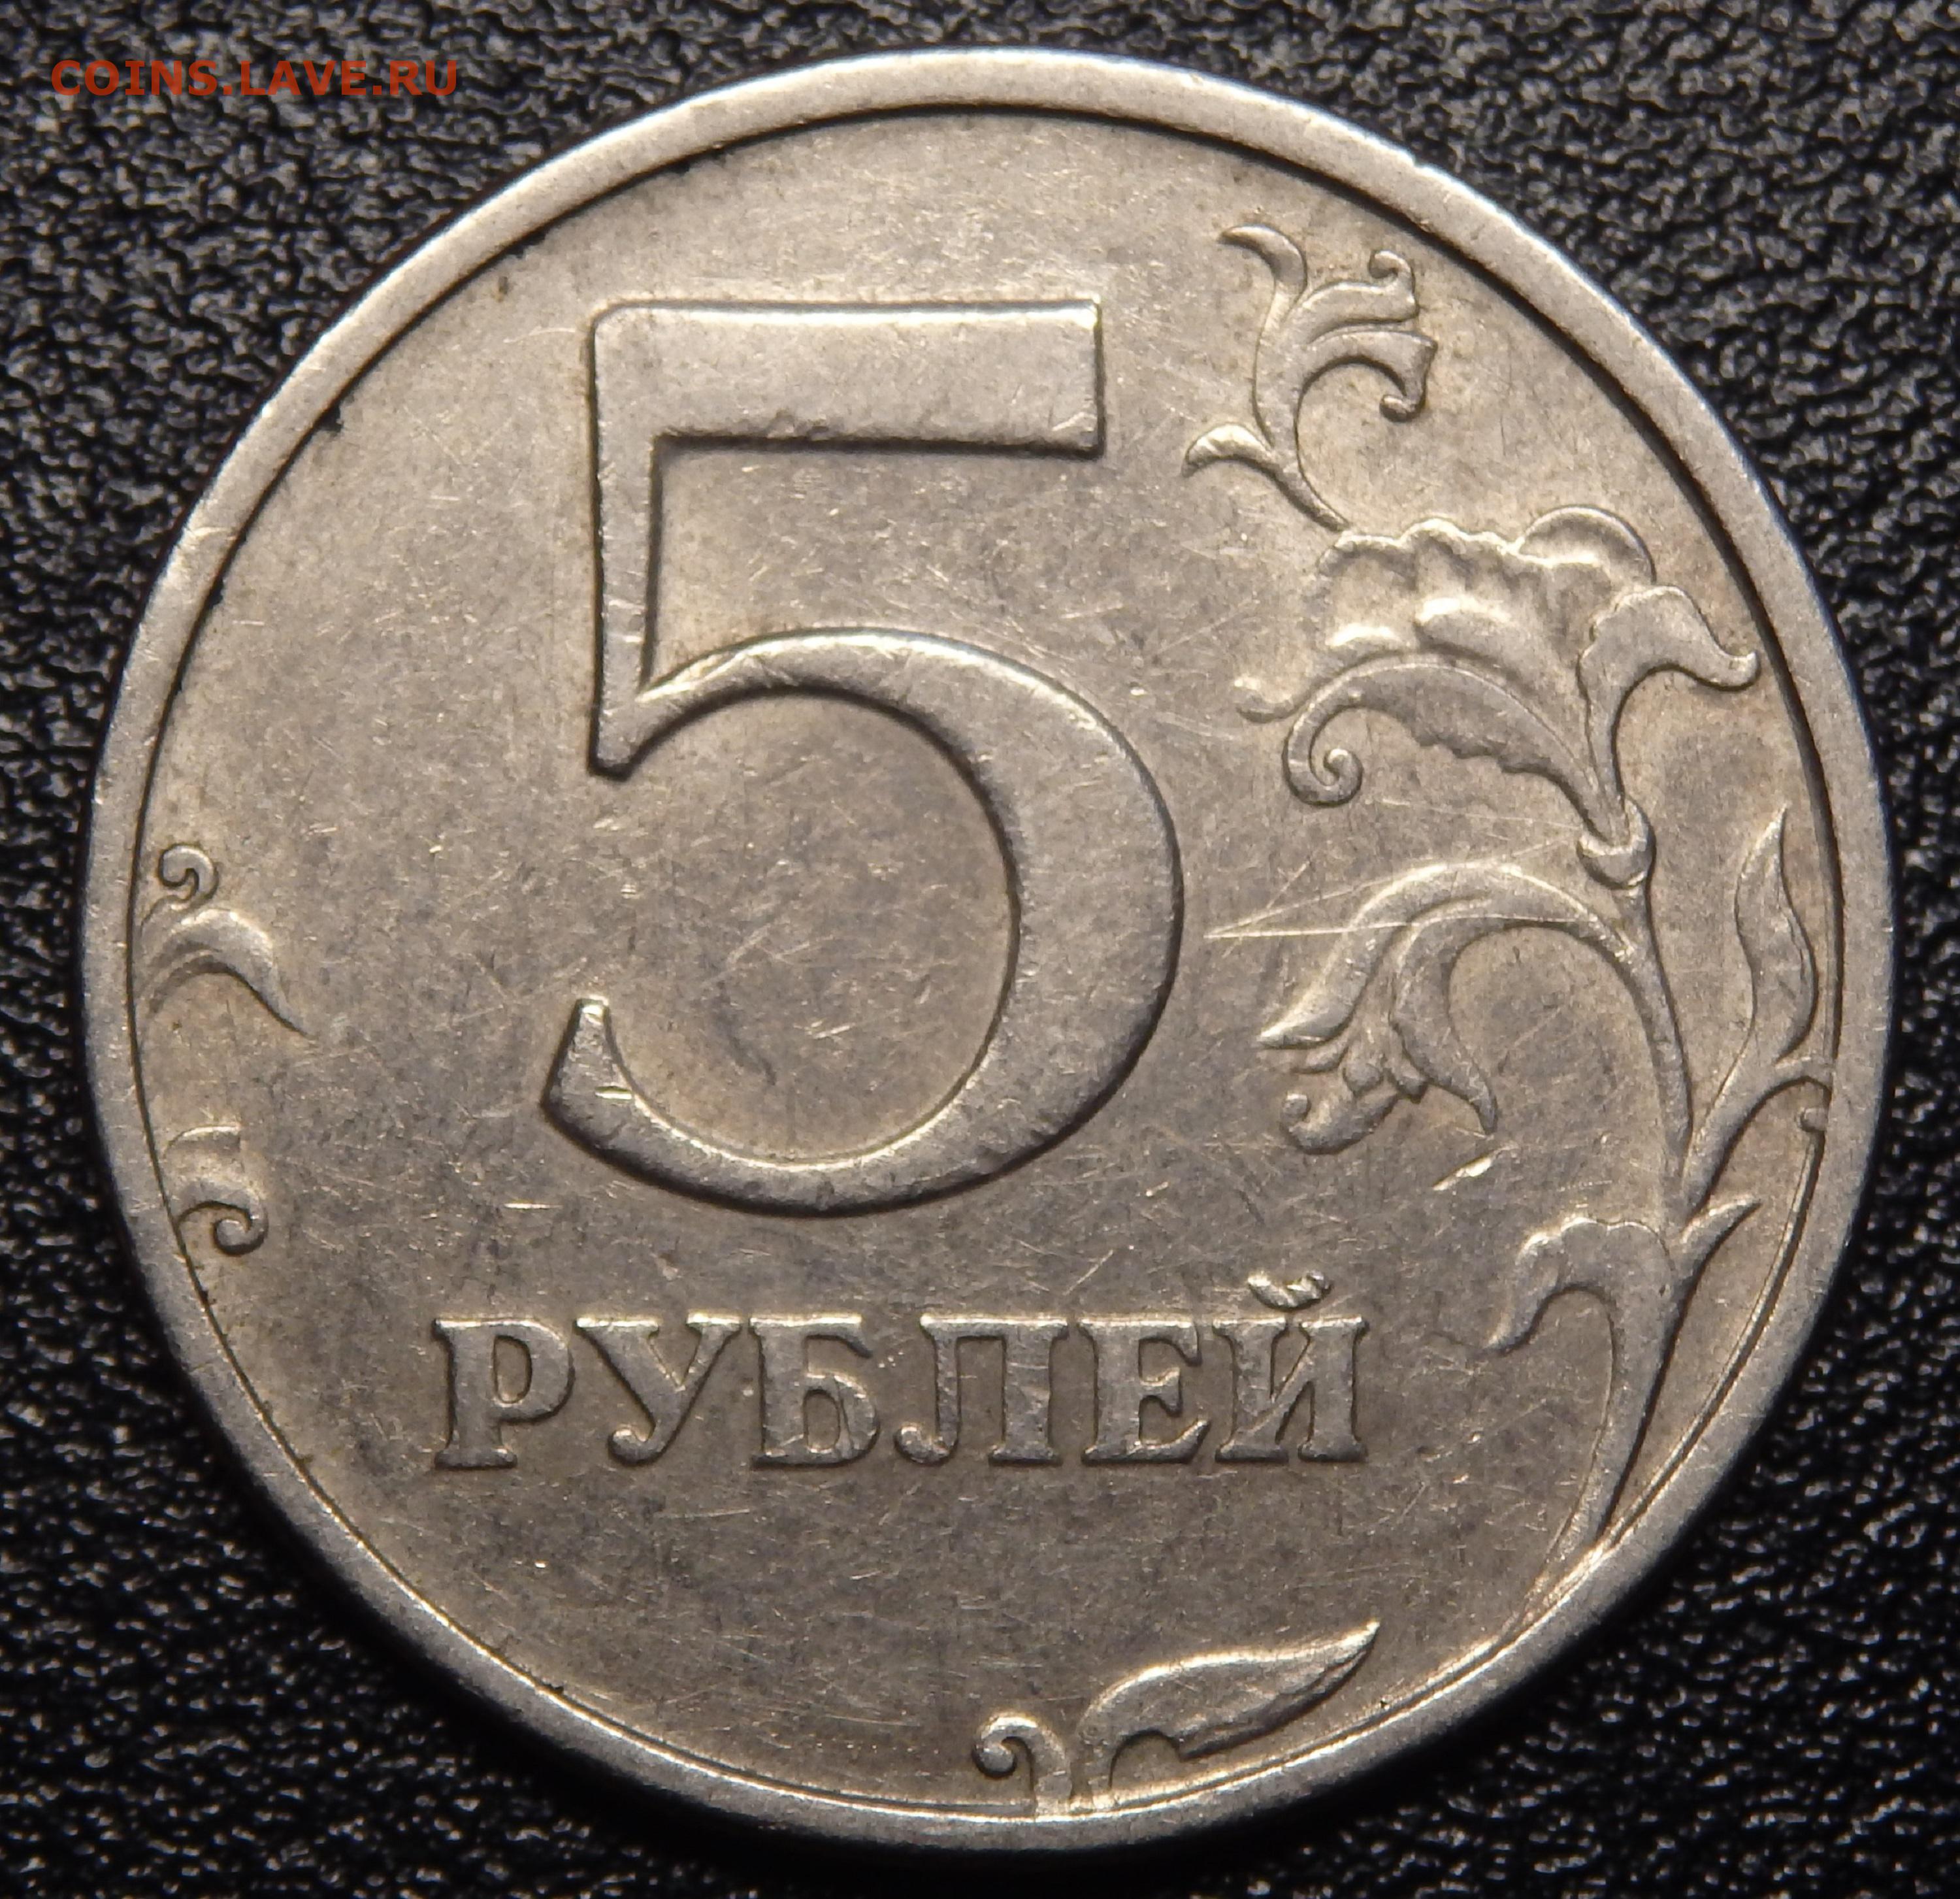 5 рублей хватит. 5 Рублей. Монеты рубли. Изображение монет. Пять рублей монета.